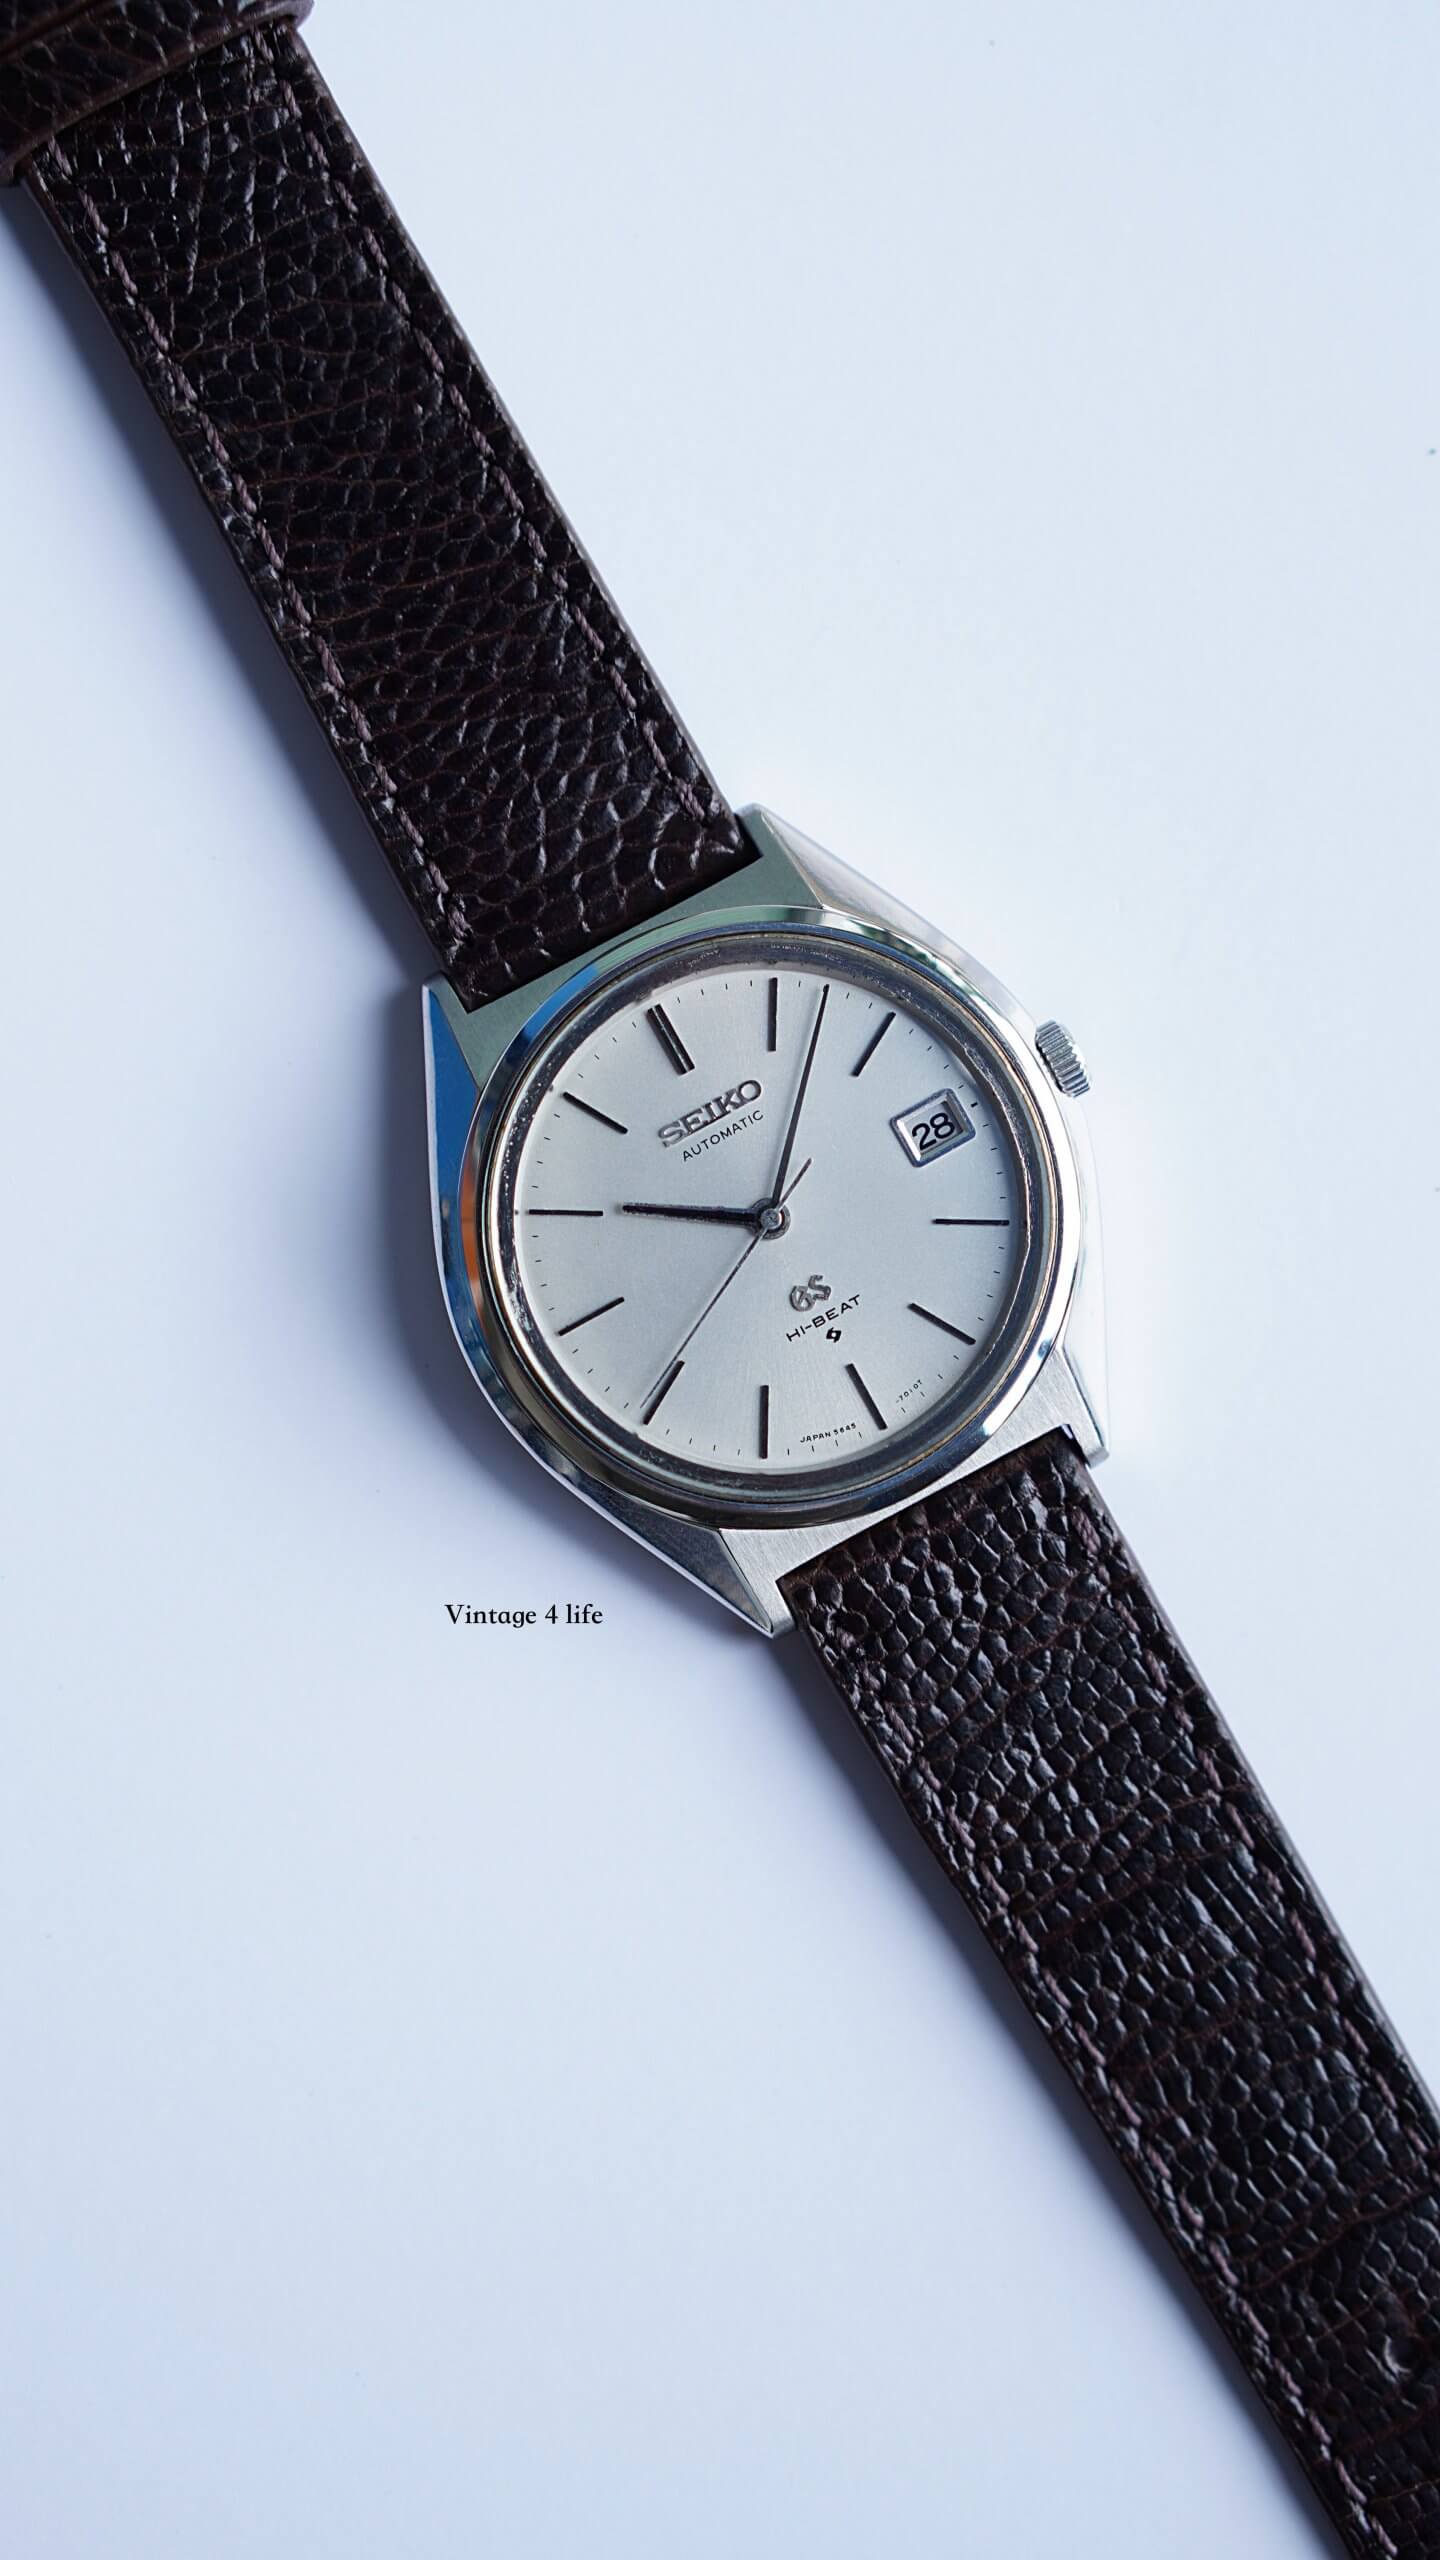 Đồng hồ cổ Seiko Matic 30 jewels automatic bọc vàng chính hãng nhật bản